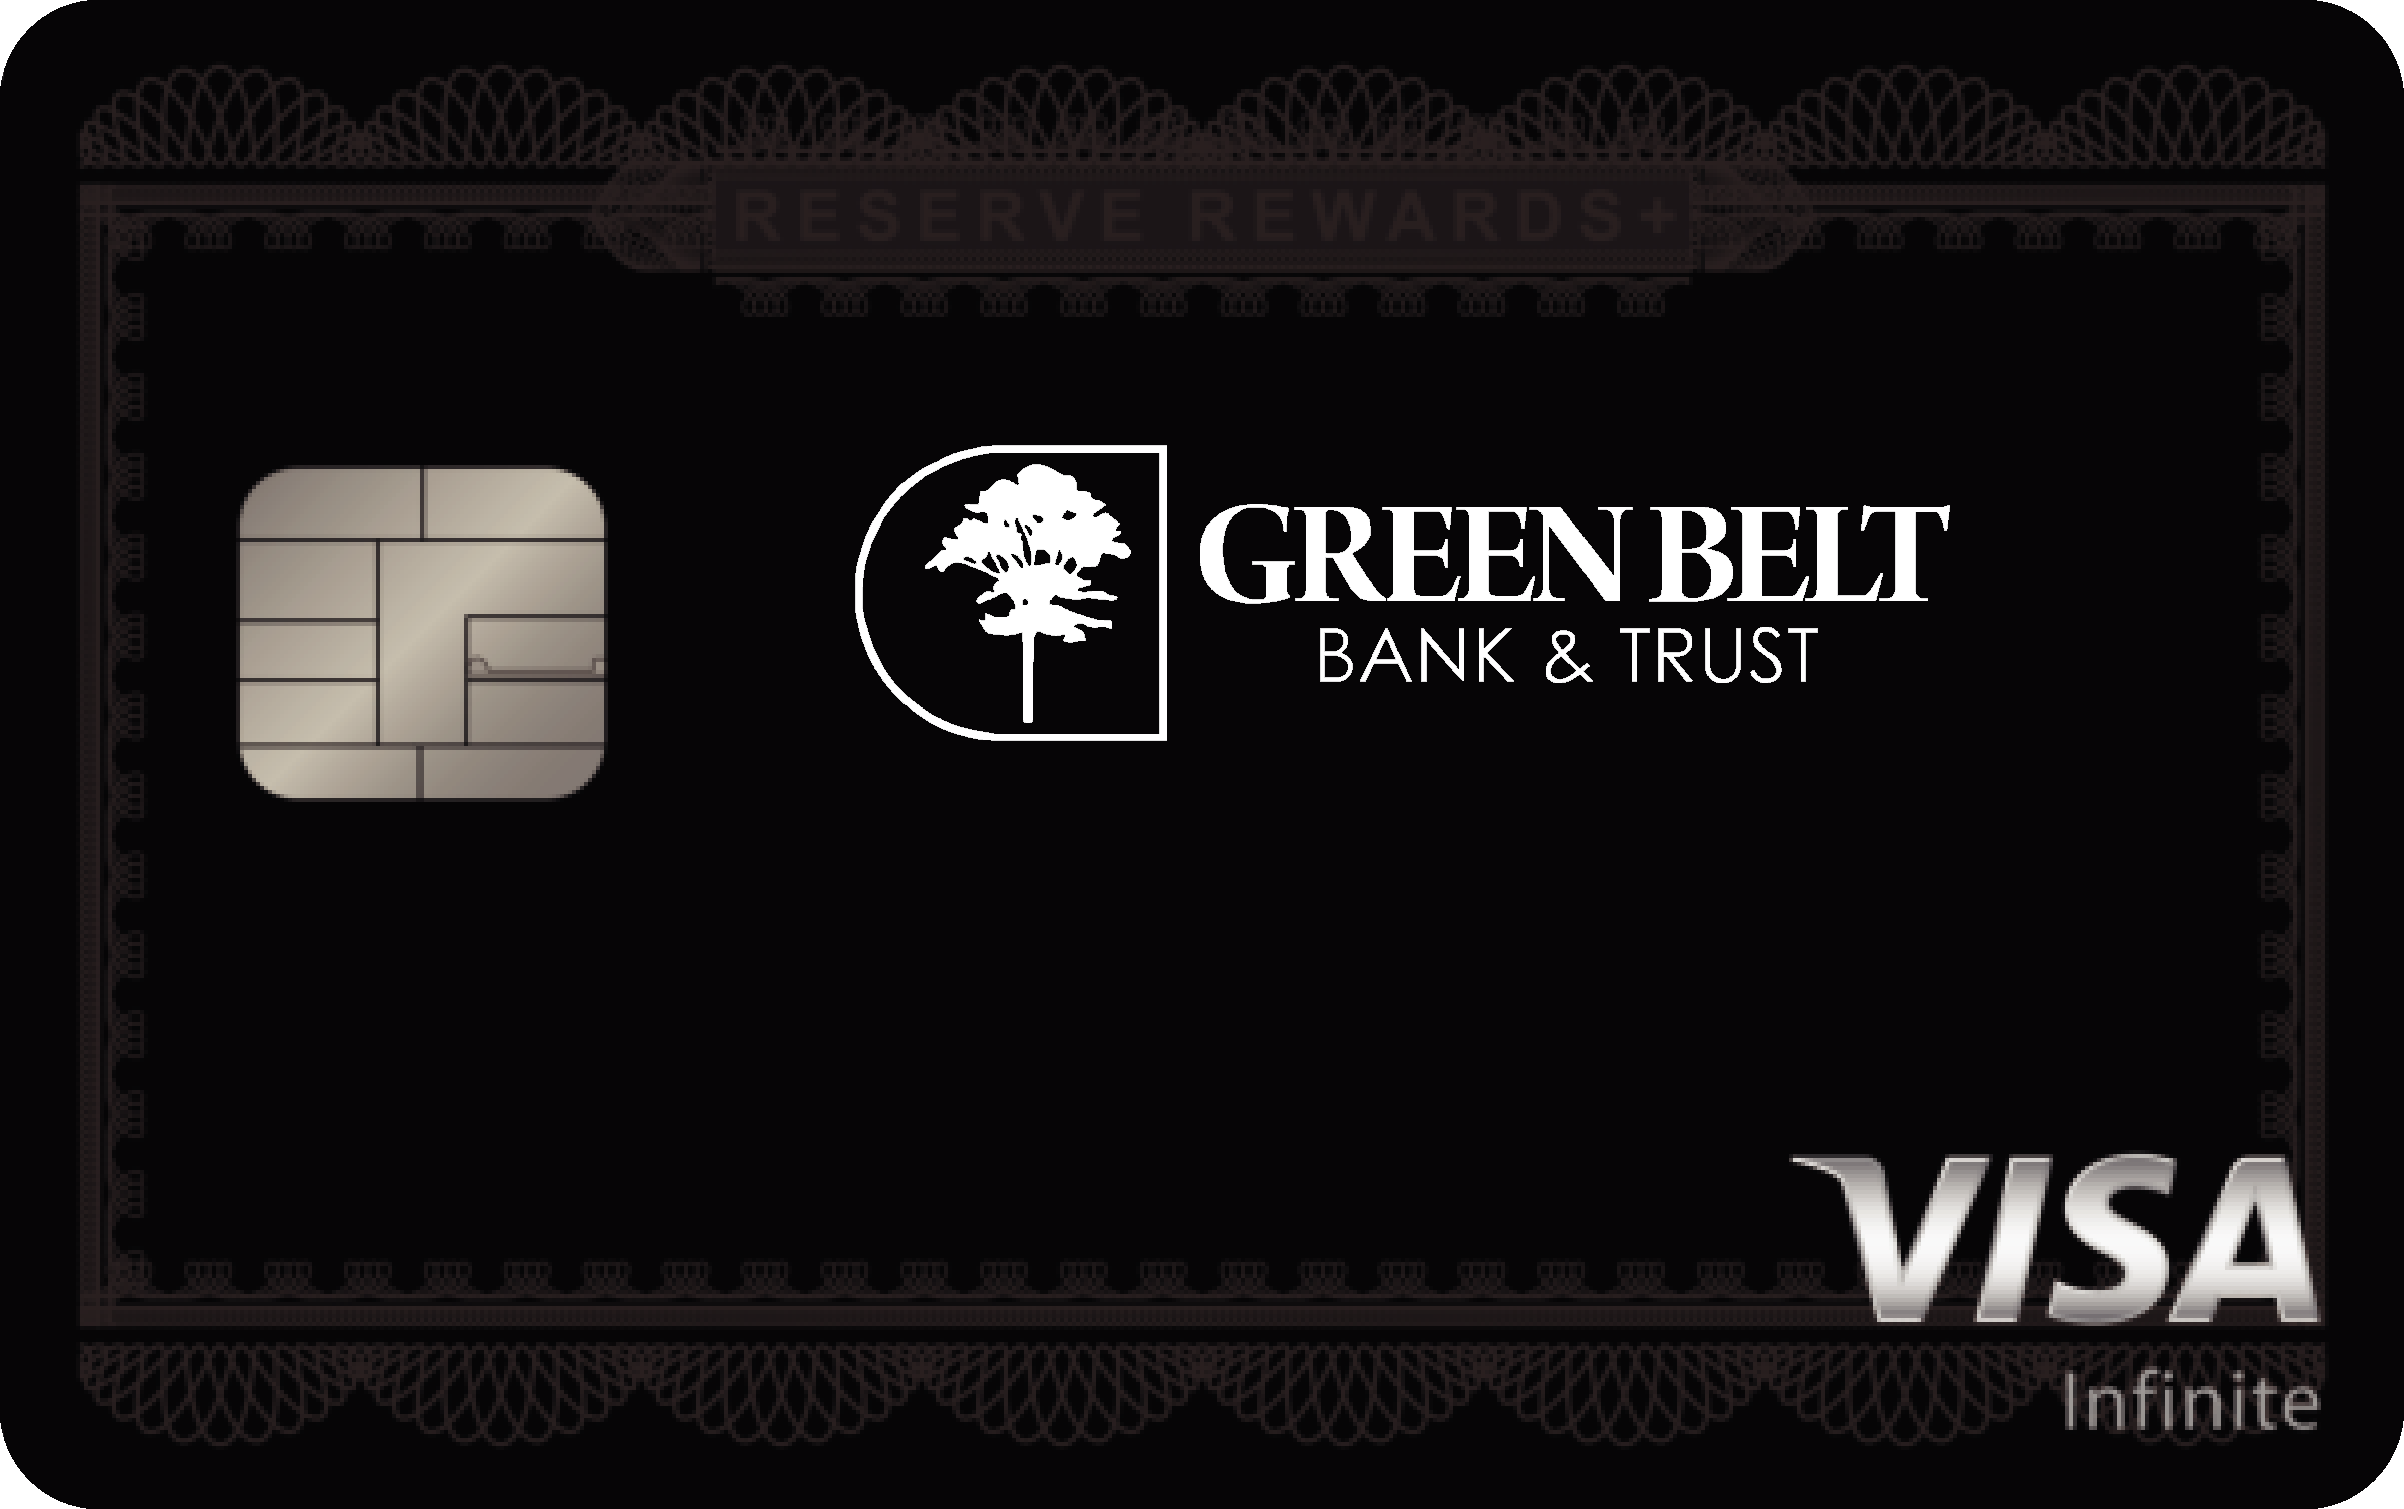 Green Belt Bank & Trust